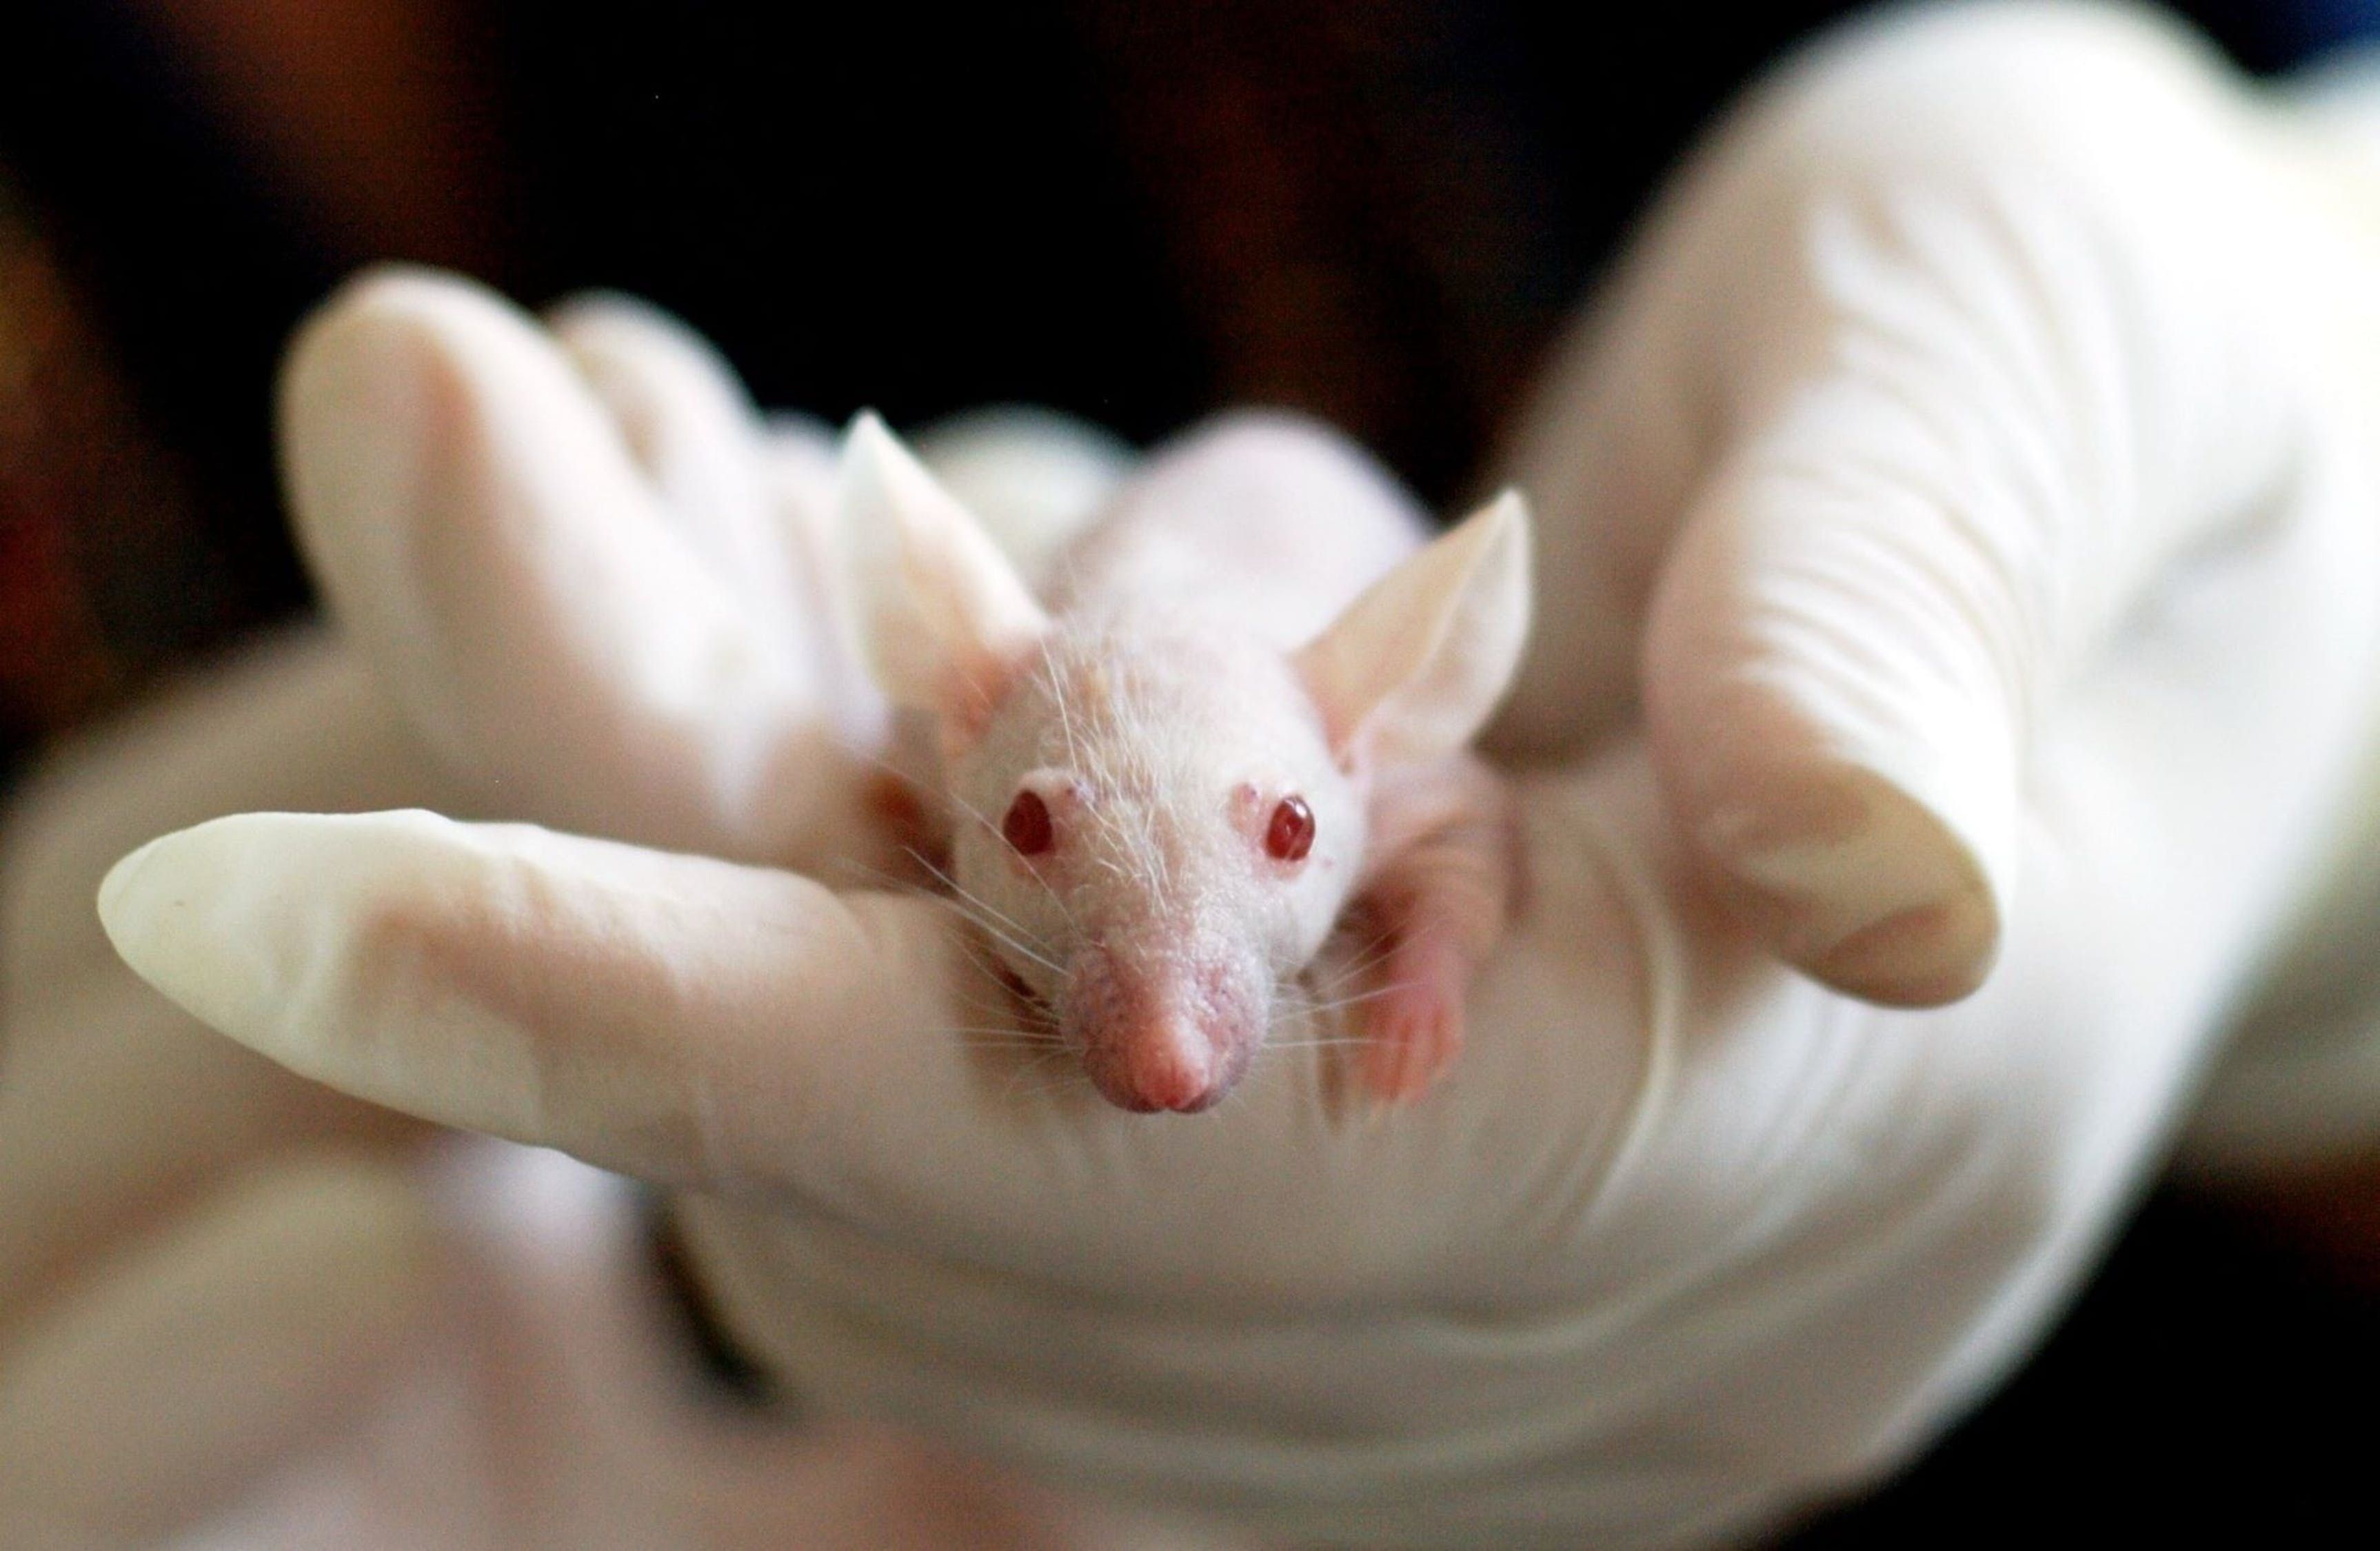 Розчинний пластир вилікував меланому у піддослідних мишей: фото